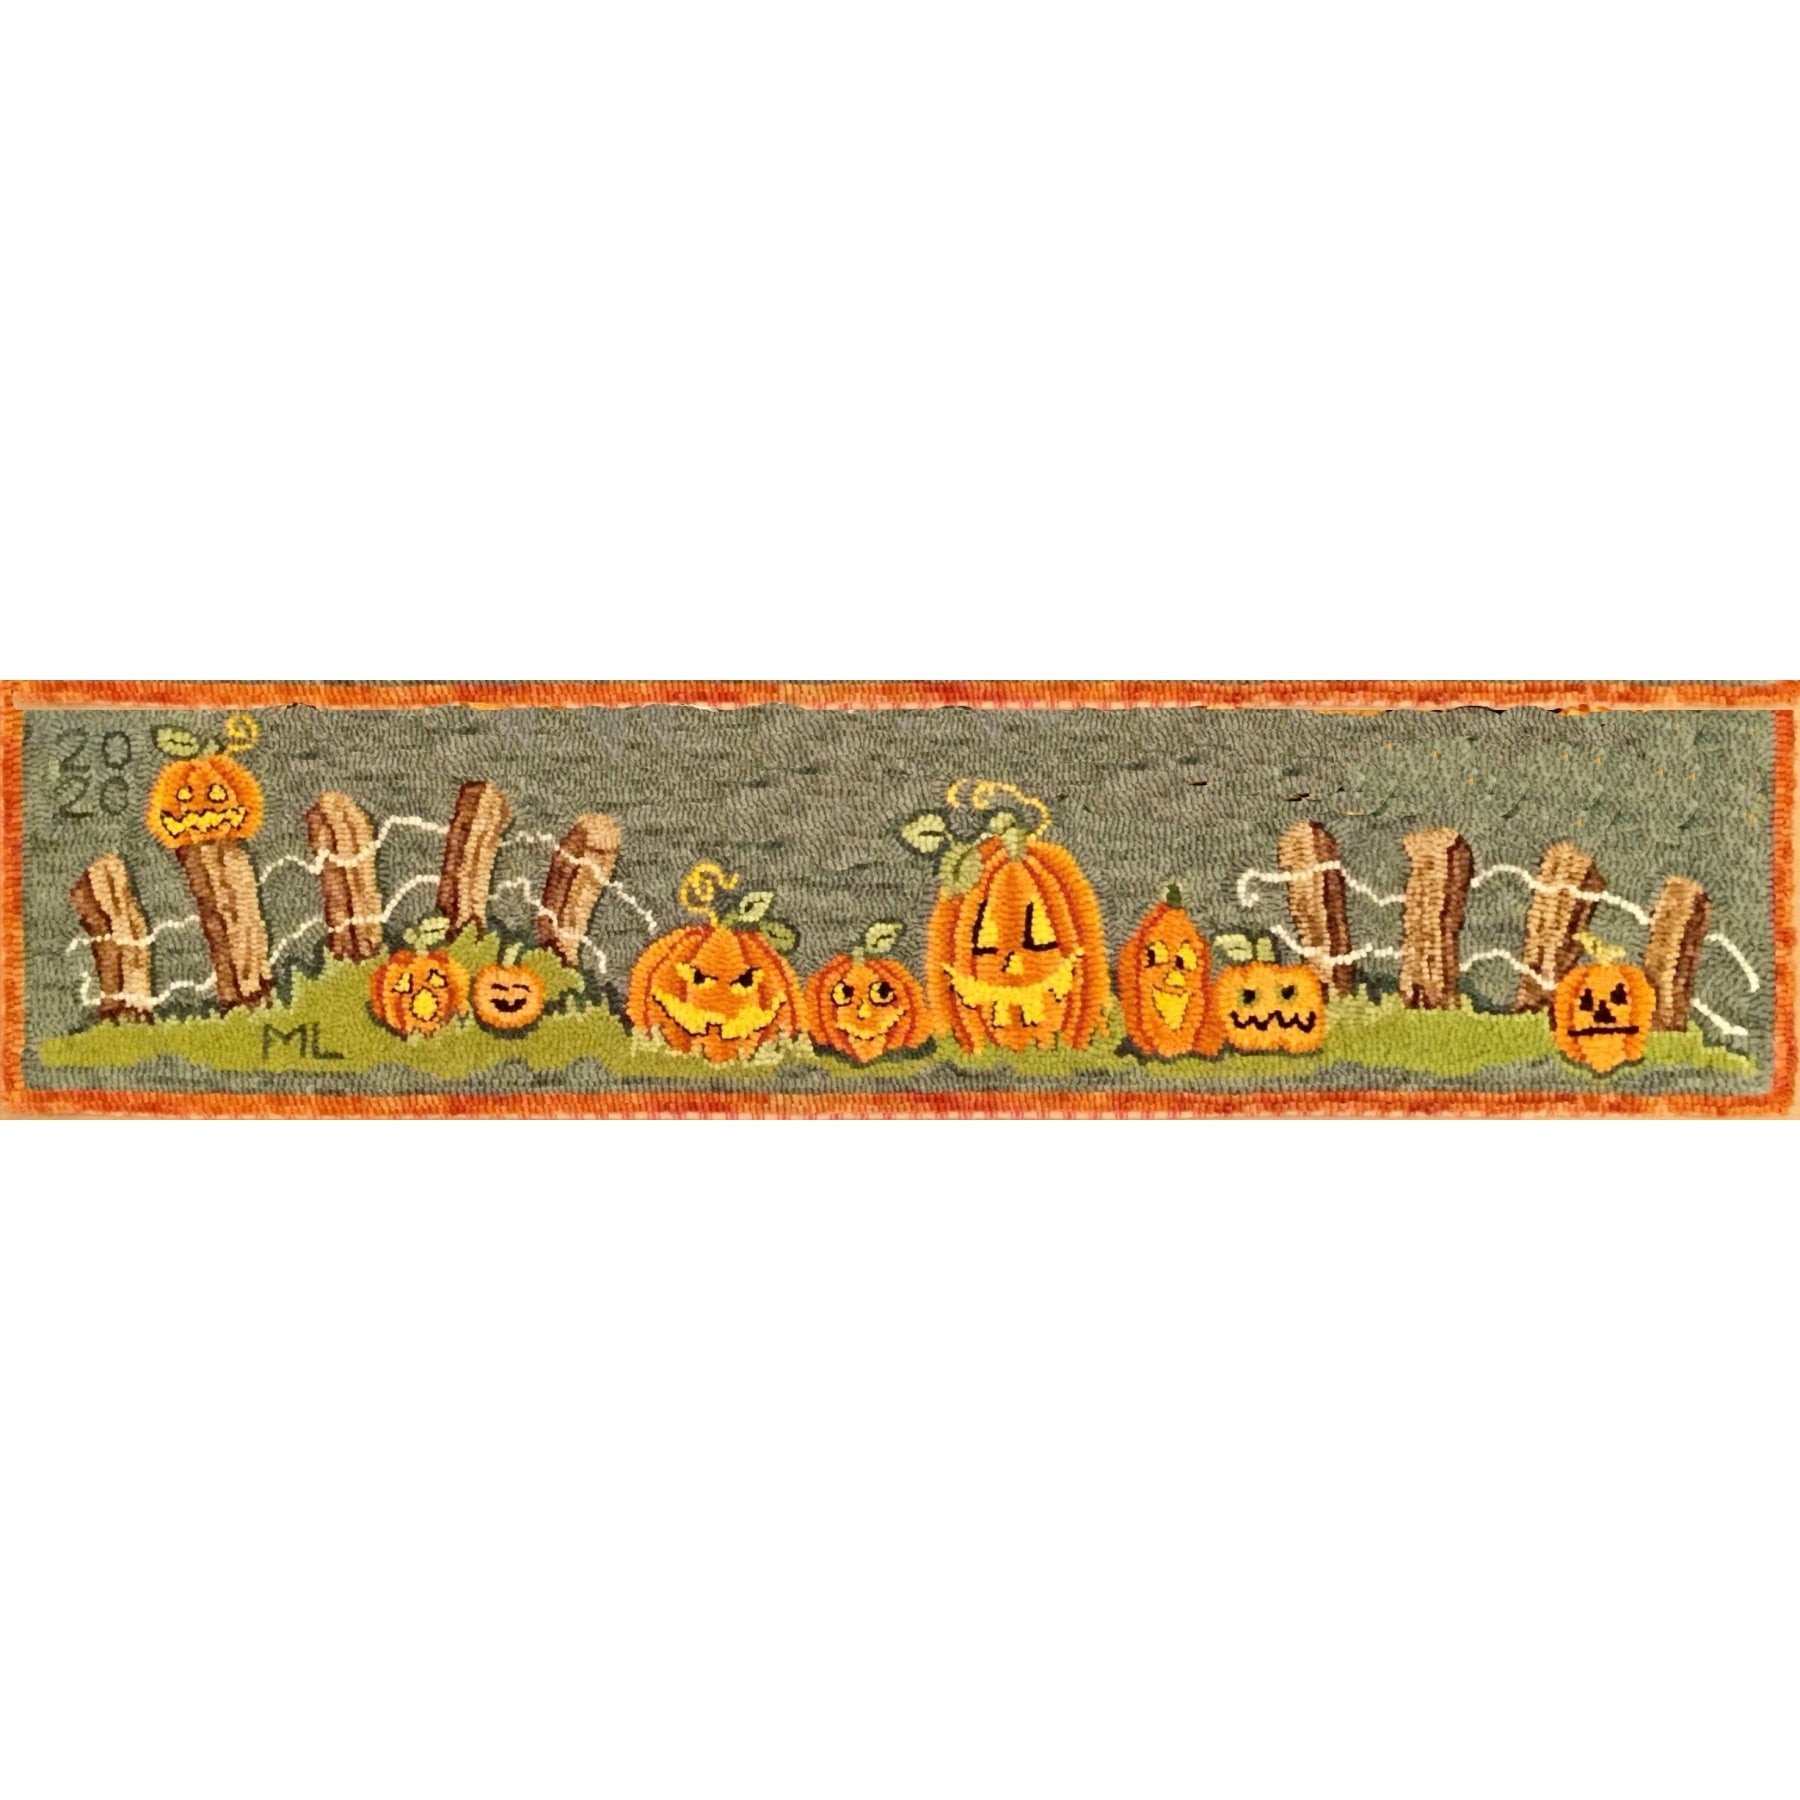 9 Jacks - Row of Pumpkins, rug hooked by Martha Lowry